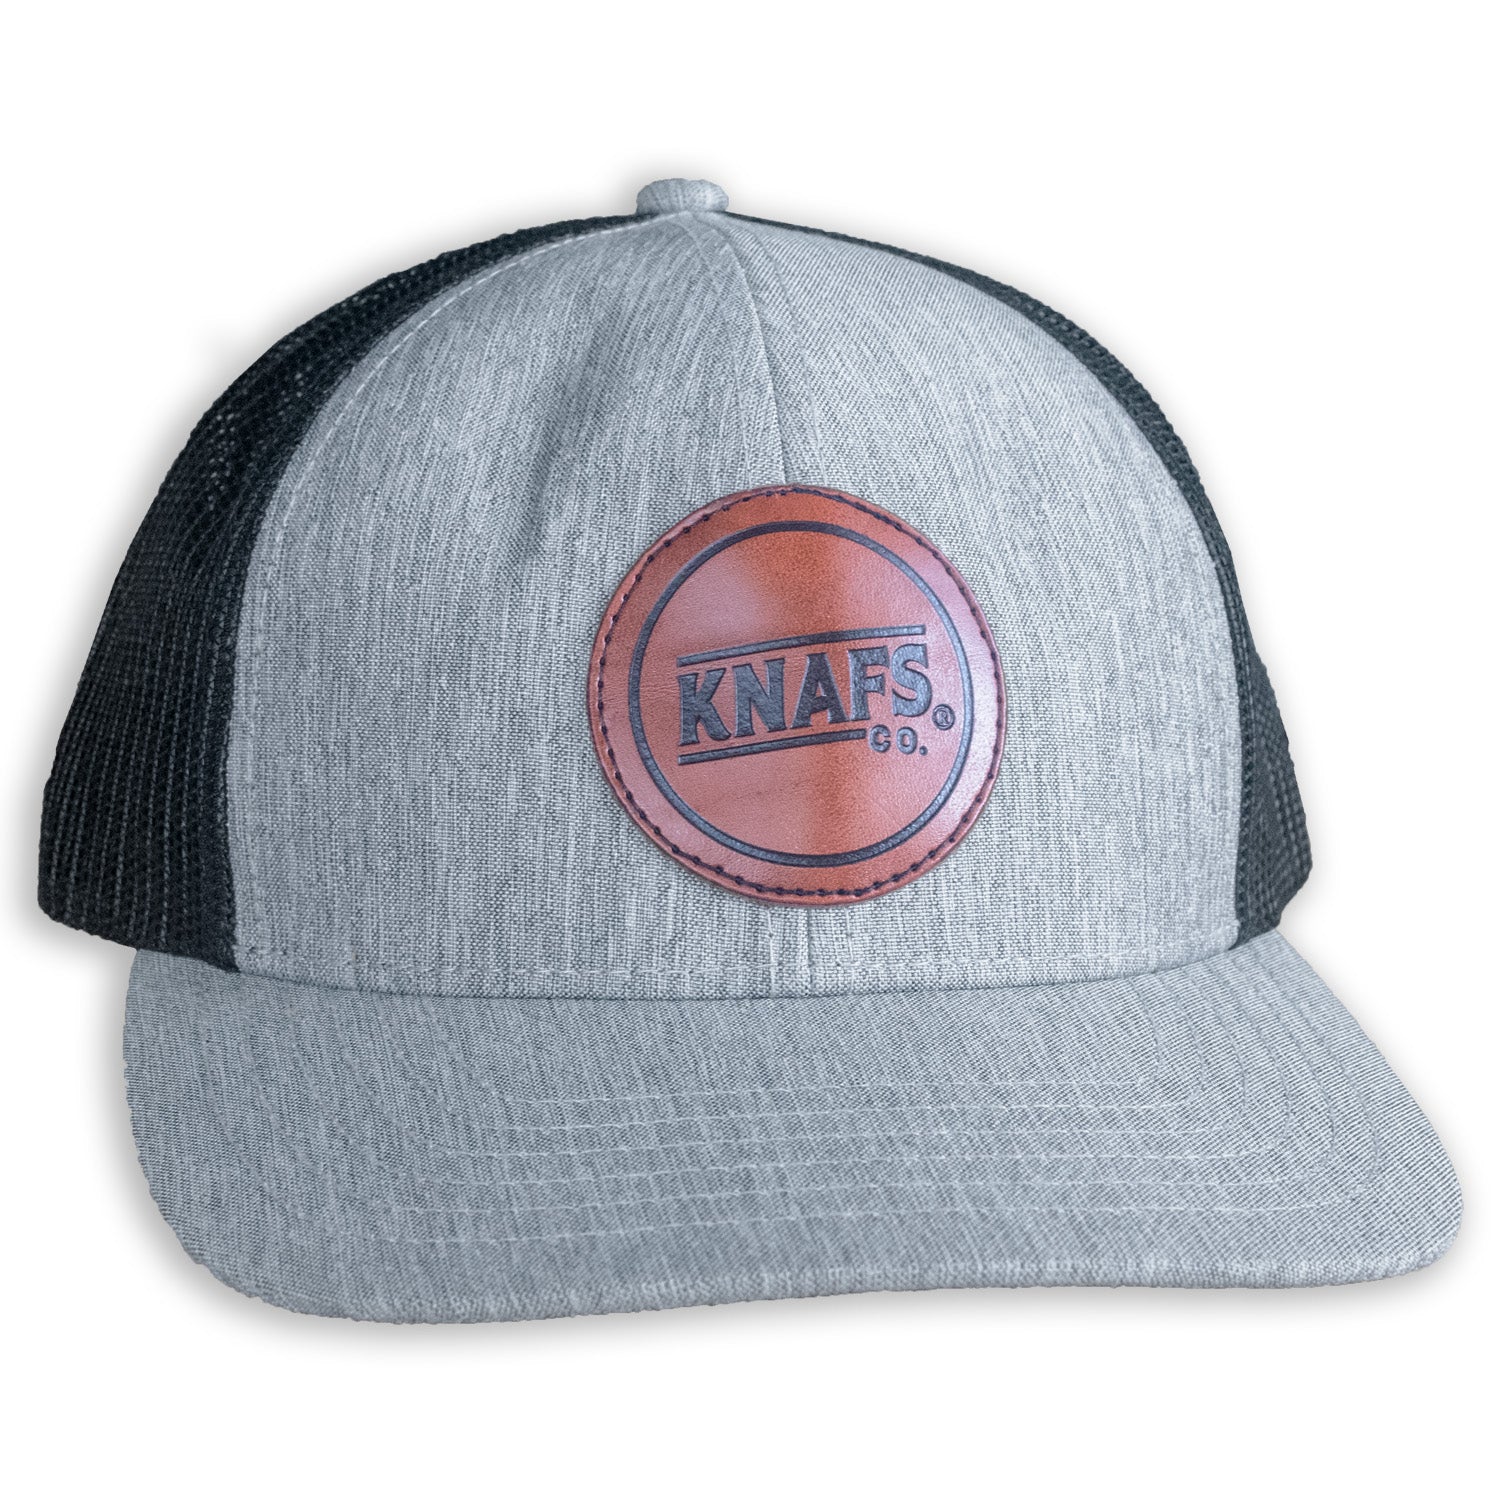 Knafs Trucker Hat Snapback